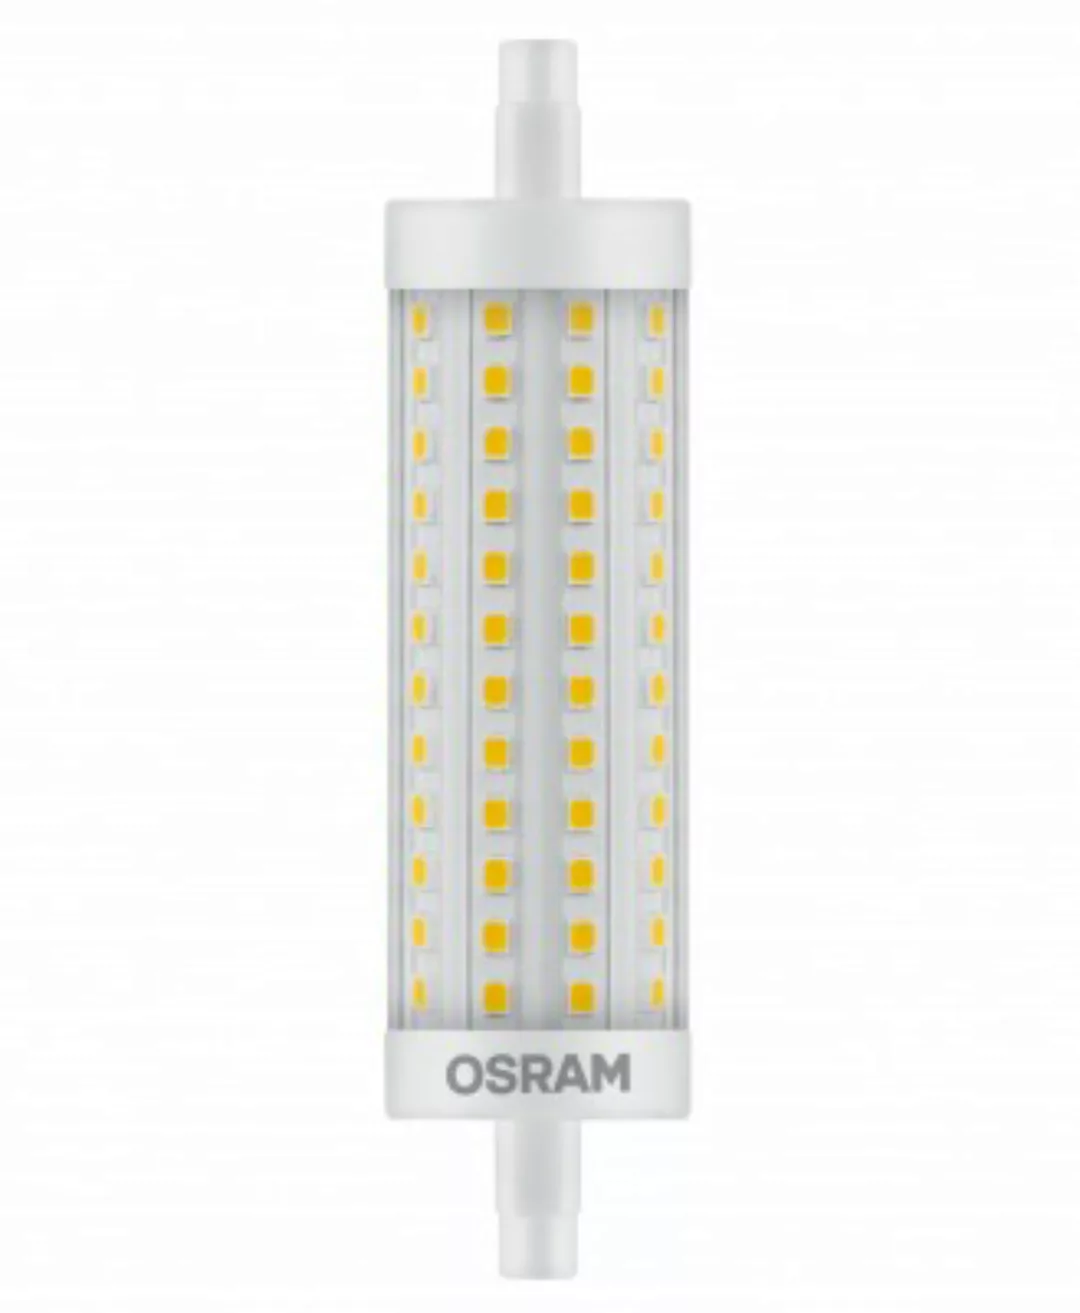 OSRAM LED SUPERSTAR LINE 118 150 BLI K DIM Warmweiß SMD Klar R7s Stablampe günstig online kaufen